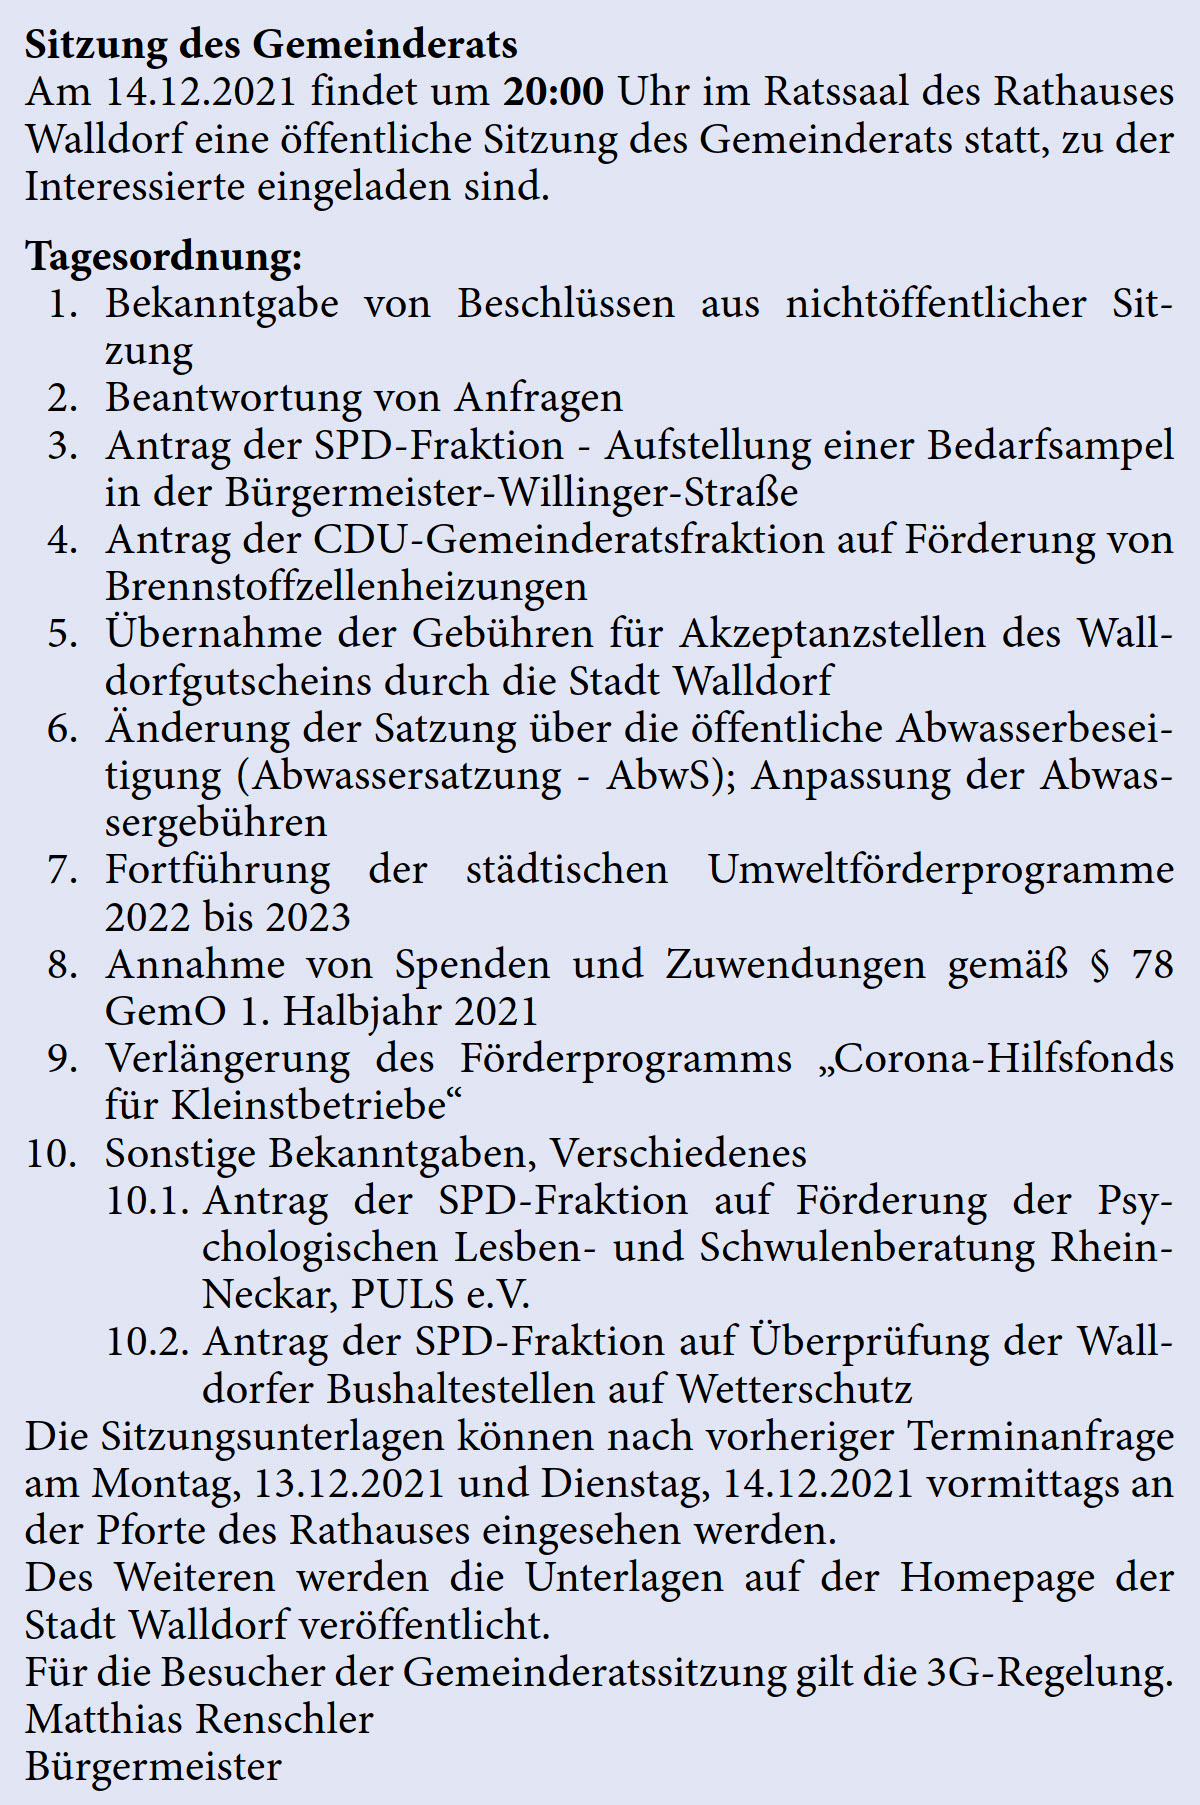 Am 14.12.2021 findet um 20:00 Uhr im Ratssaal des Rathauses  Walldorf eine öffentliche Sitzung des Gemeinderats statt, zu der  Interessierte eingeladen sind. Tagesordnung:  1. Bekanntgabe von Beschlüssen aus nichtöffentlicher Sit- zung   2. Beantwortung von Anfragen   3. Antrag der SPD-Fraktion - Aufstellung einer Bedarfsampel  in der Bürgermeister-Willinger-Straße   4. Antrag der CDU-Gemeinderatsfraktion auf Förderung von  Brennstoffzellenheizungen   5. Übernahme der Gebühren für Akzeptanzstellen des Wall- dorfgutscheins durch die Stadt Walldorf   6. Änderung der Satzung über die öffentliche Abwasserbesei- tigung (Abwassersatzung - AbwS); Anpassung der Abwas- sergebühren   7. Fortführung der städtischen Umweltförderprogramme  2022 bis 2023   8. Annahme von Spenden und Zuwendungen gemäß § 78  GemO 1. Halbjahr 2021   9. Verlängerung des Förderprogramms „Corona-Hilfsfonds  für Kleinstbetriebe“  10. Sonstige Bekanntgaben, Verschiedenes   10.1. Antrag der SPD-Fraktion auf Förderung der Psy- chologischen Lesben- und Schwulenberatung Rhein- Neckar, PULS e.V.  10.2. Antrag der SPD-Fraktion auf Überprüfung der Wall- dorfer Bushaltestellen auf Wetterschutz Die Sitzungsunterlagen können nach vorheriger Terminanfrage  am Montag, 13.12.2021 und Dienstag, 14.12.2021 vormittags an  der Pforte des Rathauses eingesehen werden. Des Weiteren werden die Unterlagen auf der Homepage der  Stadt Walldorf veröffentlicht. Für die Besucher der Gemeinderatssitzung gilt die 3G-Regelung. Matthias Renschler Bürgermeister